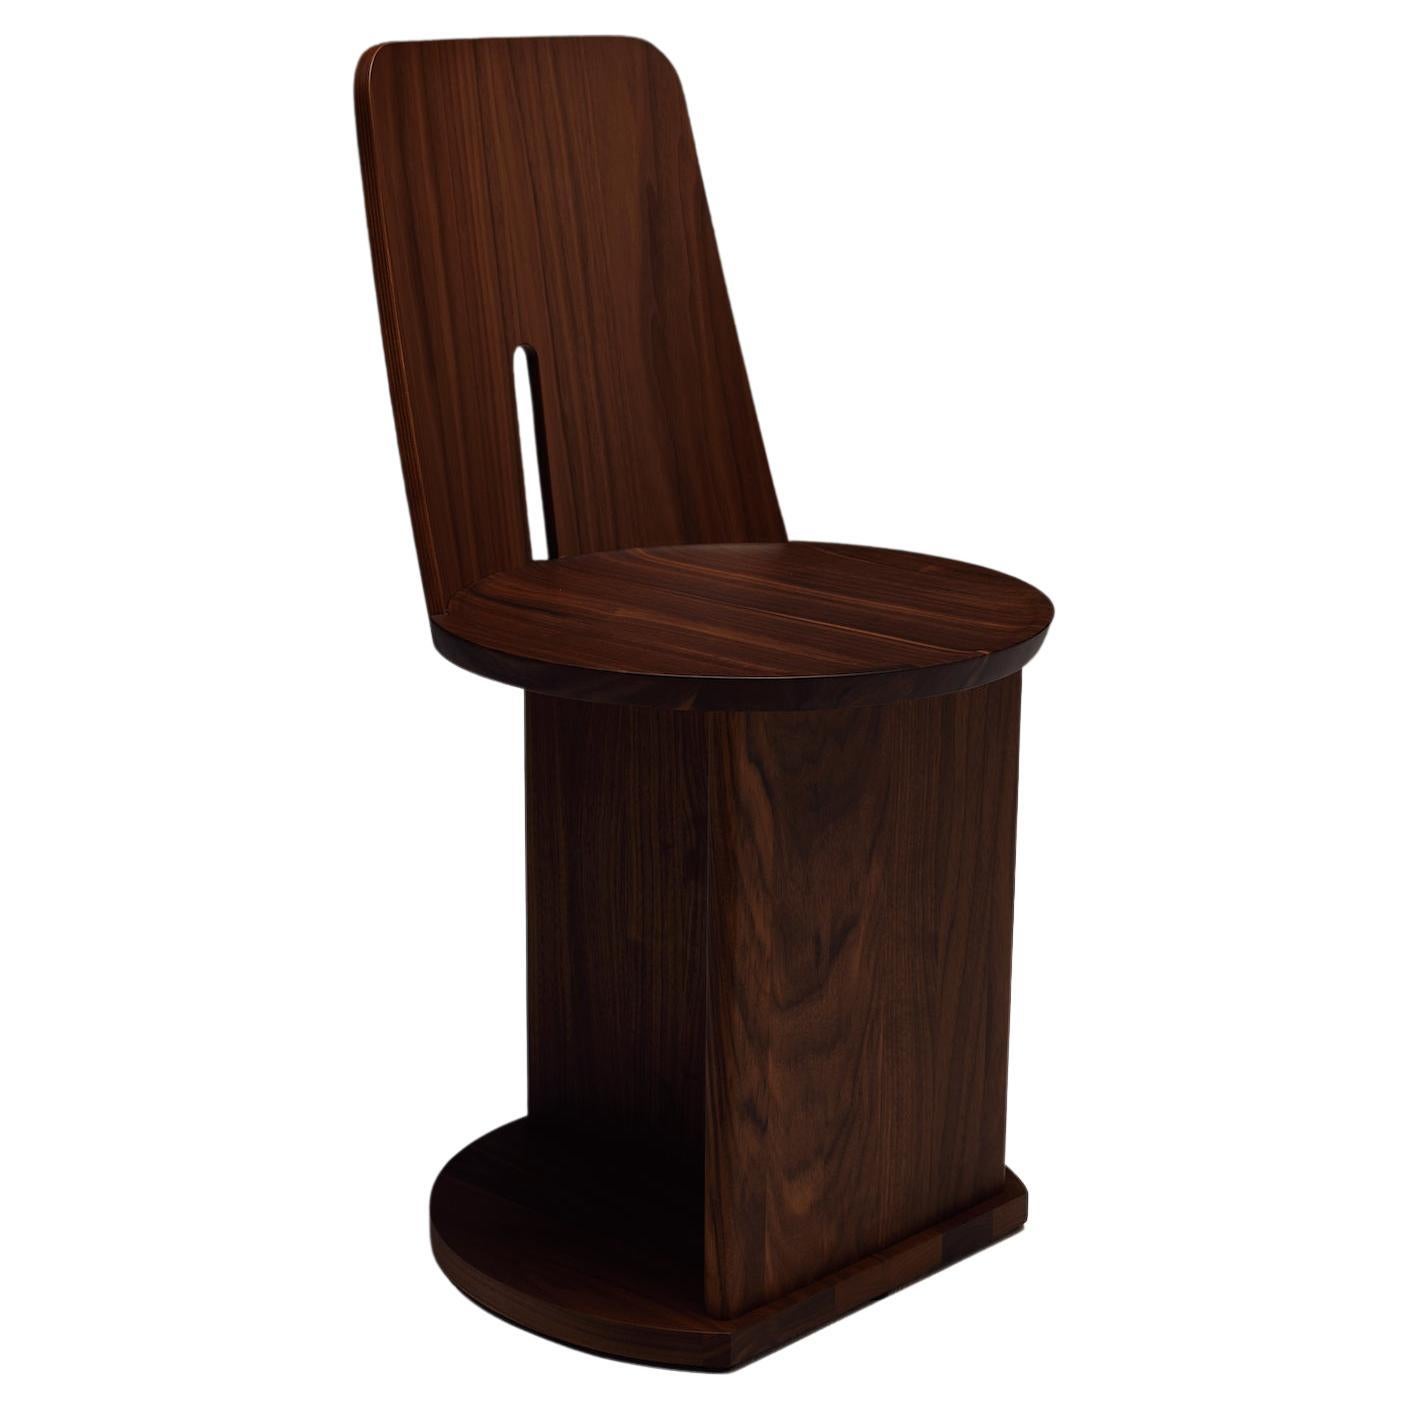 Canaletto-Stuhl aus Nussbaum von Neri & Hu, Manufacture-Paris Intersection, entworfen